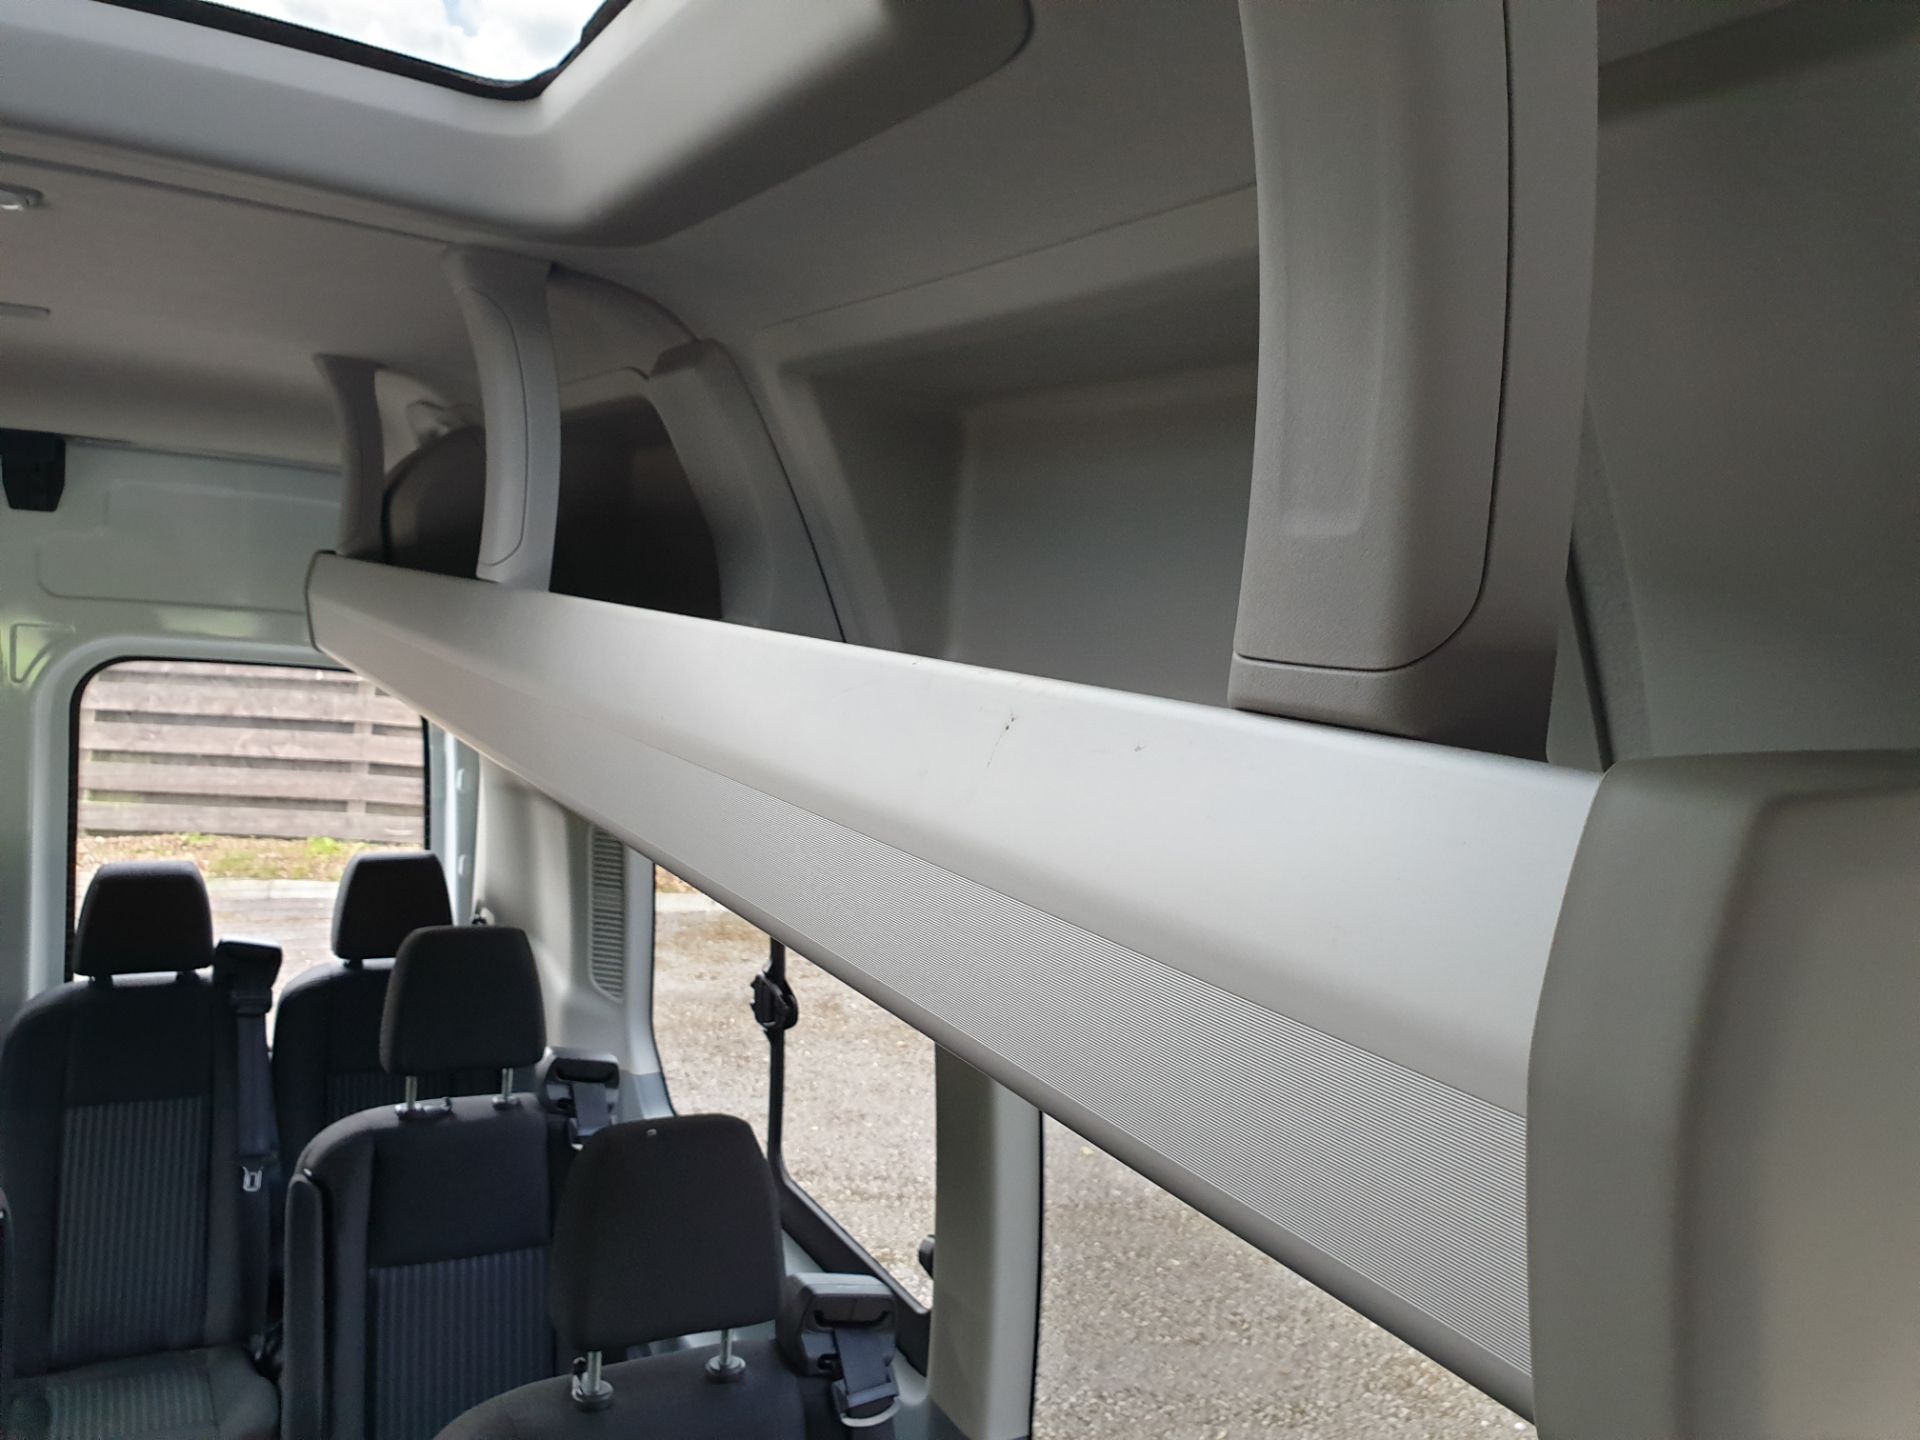 2017 / 67 Ford Transit 16 Seat Mini Bus - Image 24 of 28